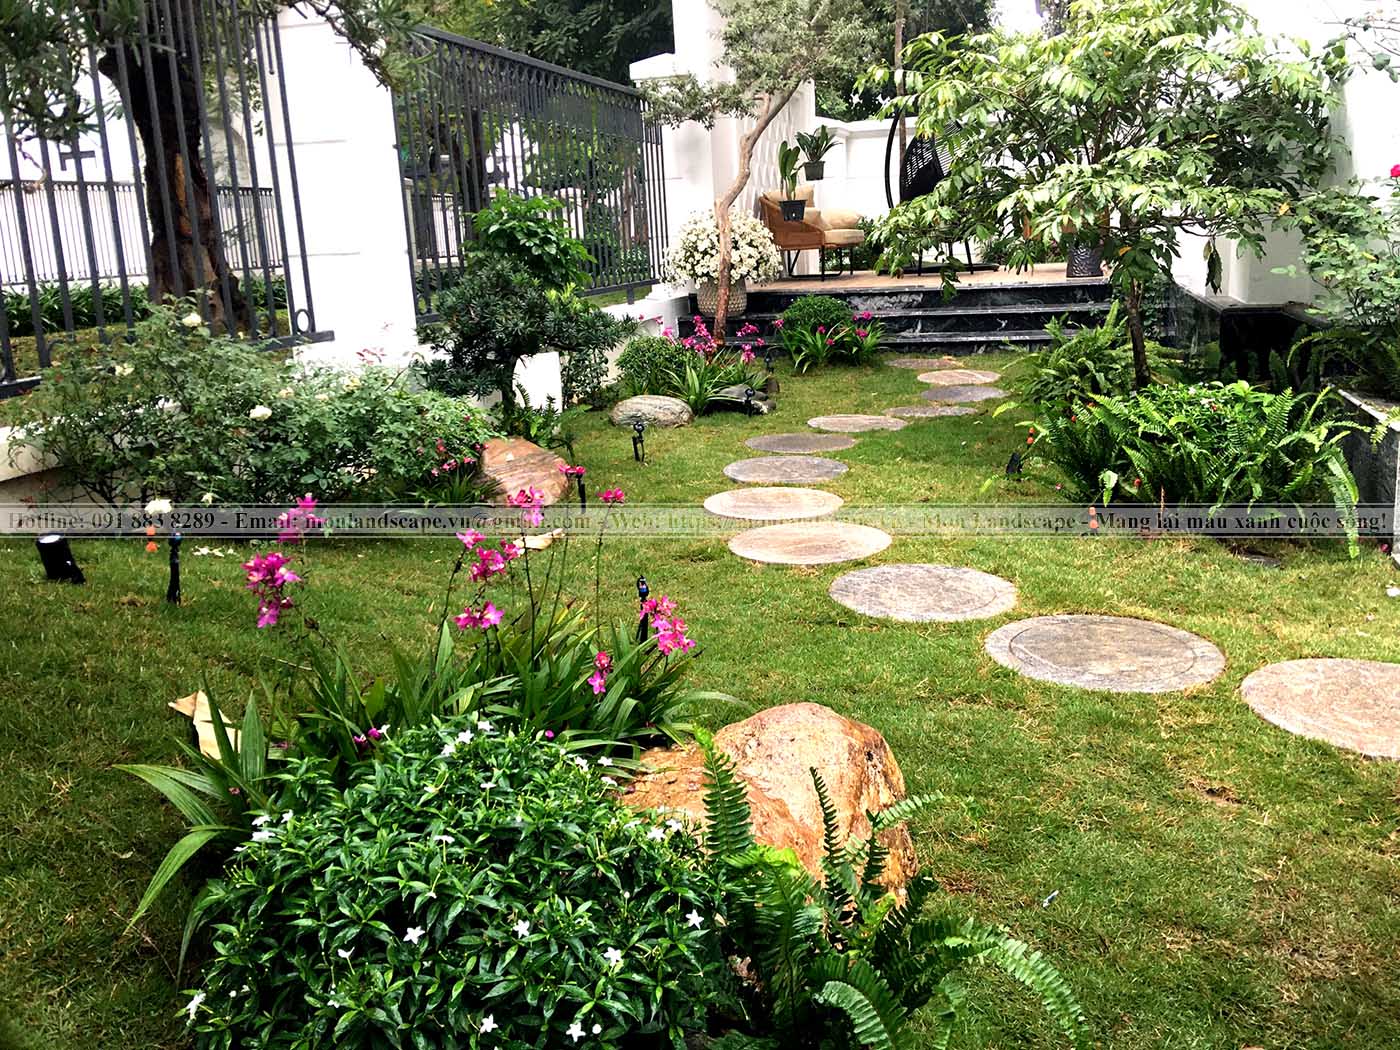 Hoàn thiện thi công và bàn giao hạng mục sân vườn cho chị Phương khu Green Villas thuộc khu đô thị Vinhomes Smart City.